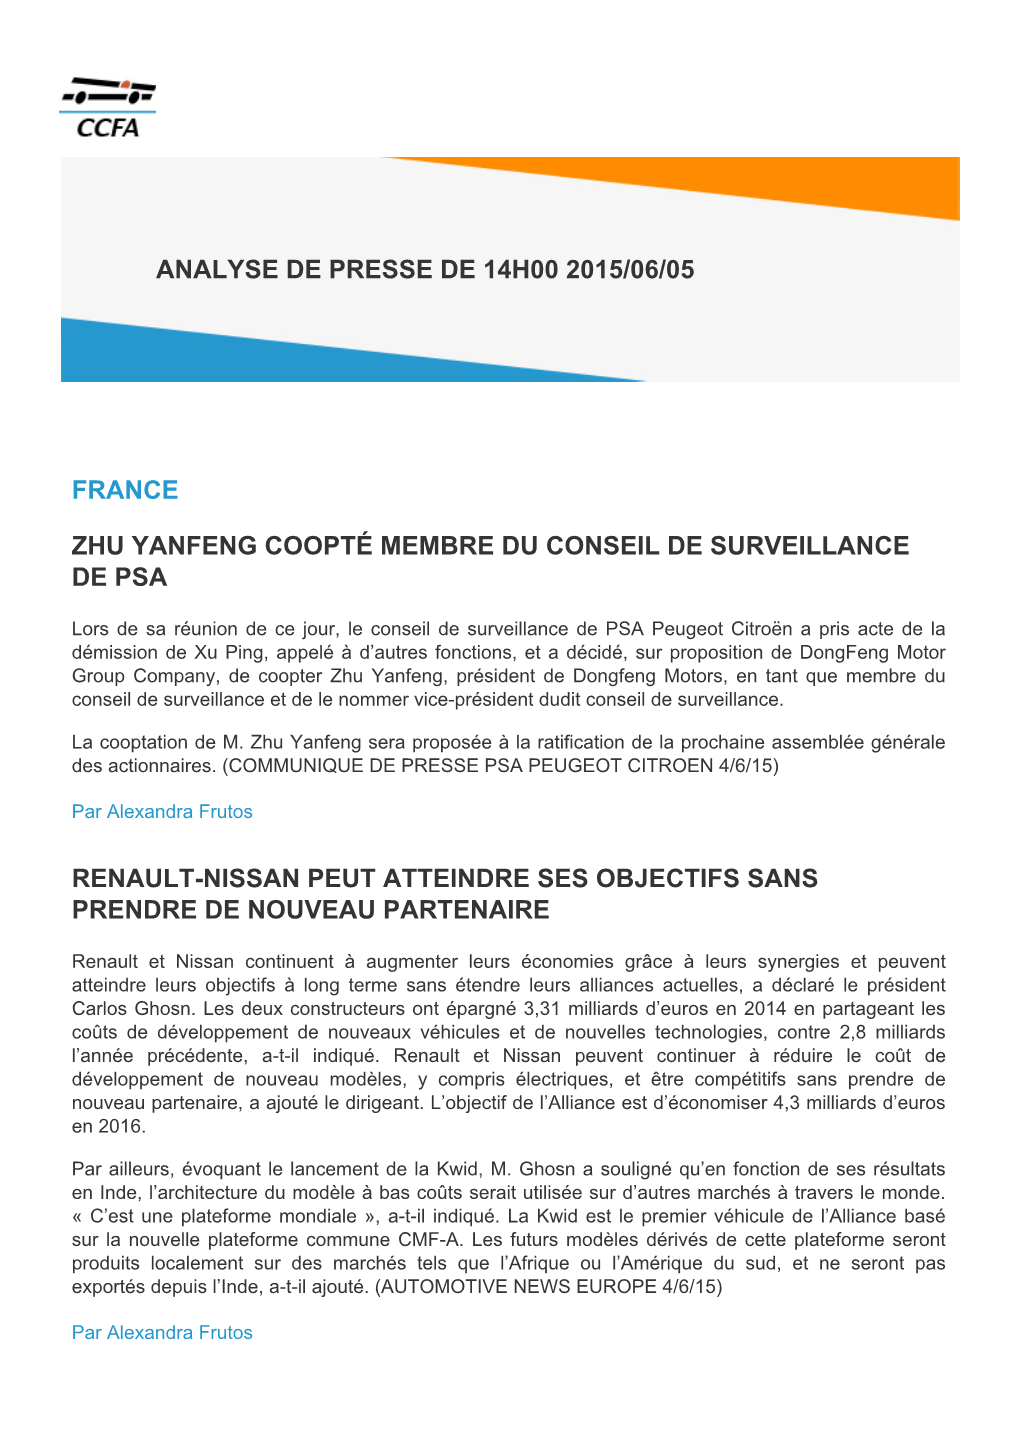 France Zhu Yanfeng Coopté Membre Du Conseil De Surveillance De Psa Renault-Nissan Peut Atteindre Ses Objectifs Sans Prendre De